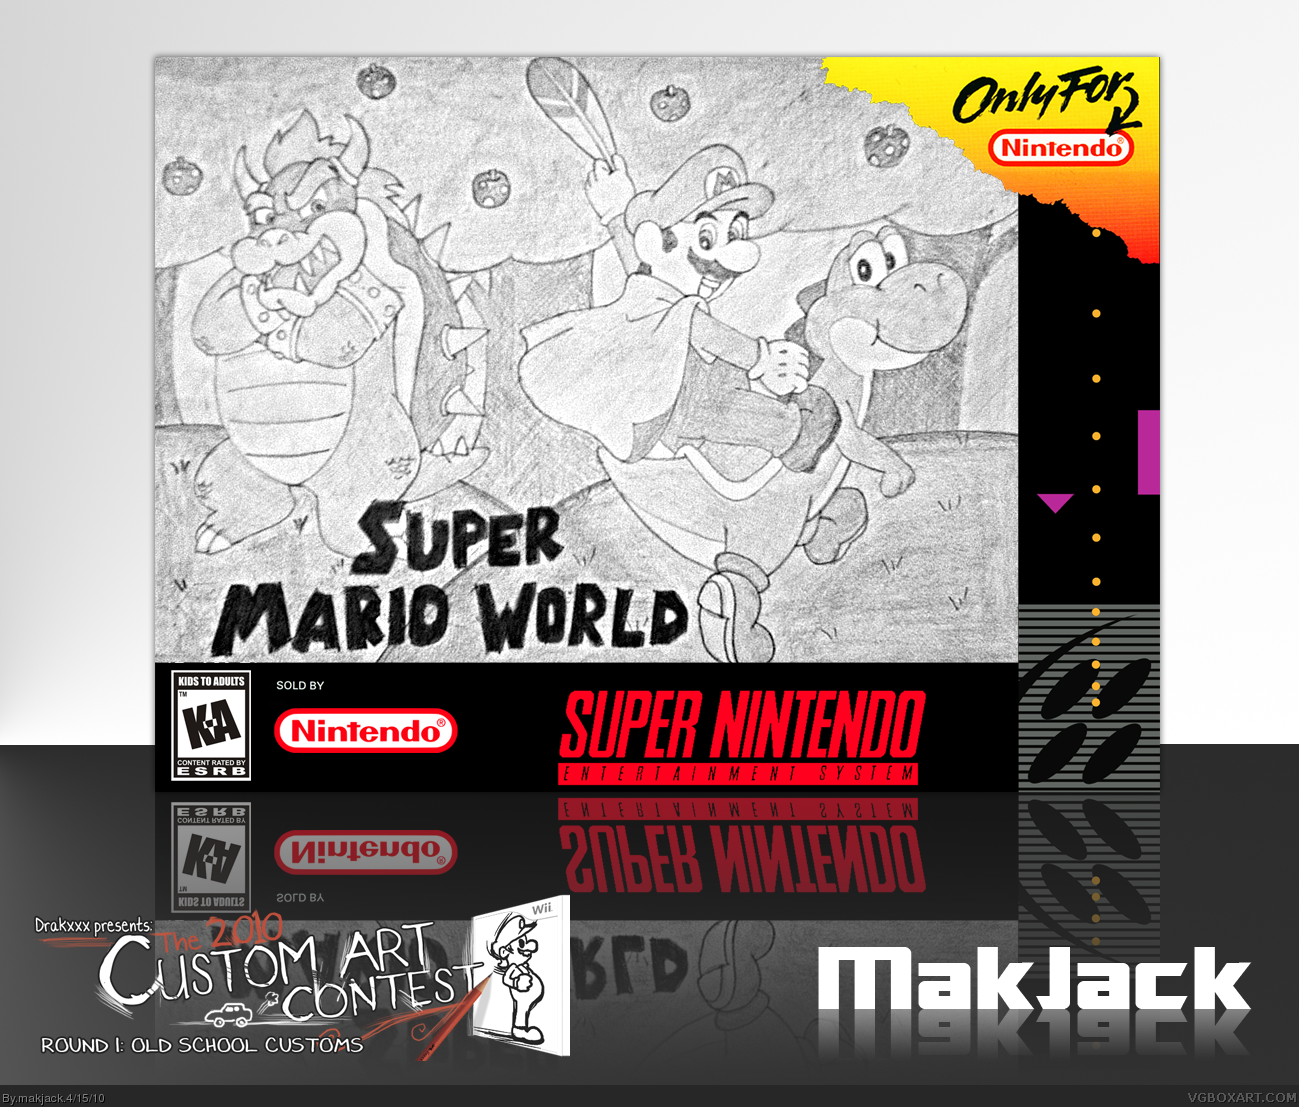 Super Mario World box cover